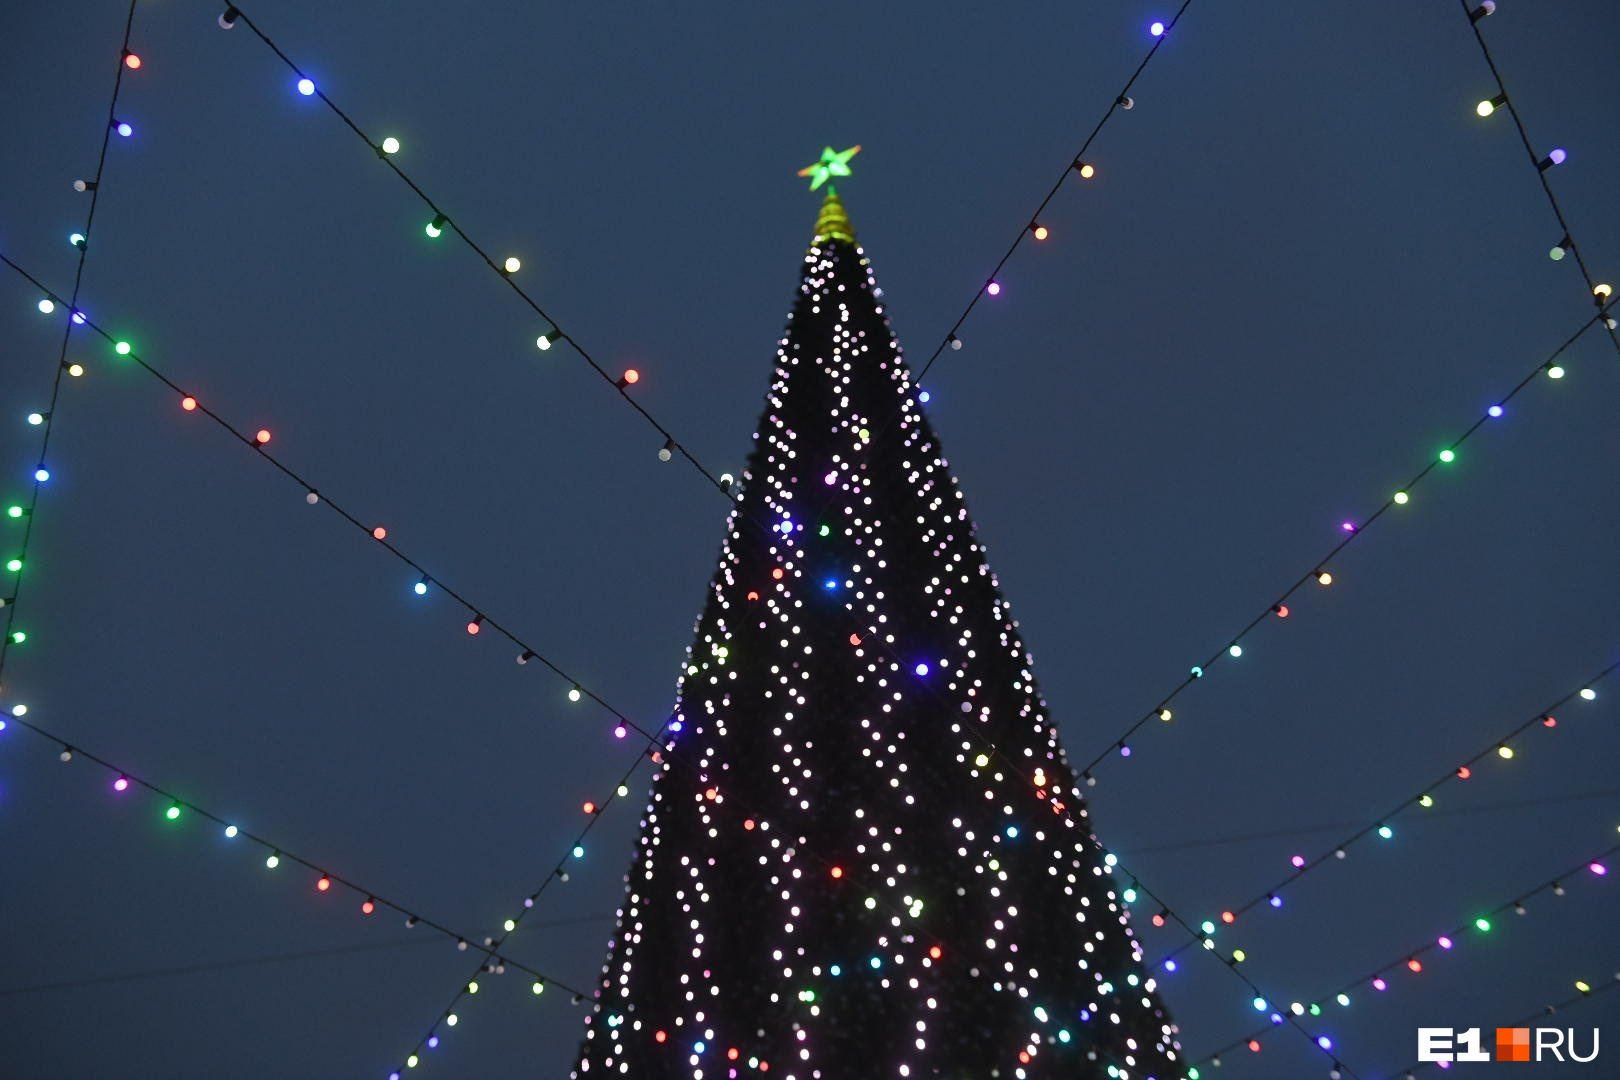 Высота елки — 50 метров, <a href="https://www.e1.ru/news/spool/news_id-66405022.html" target="_blank" class="_">выше нее только новогоднее дерево в Красноярске</a>